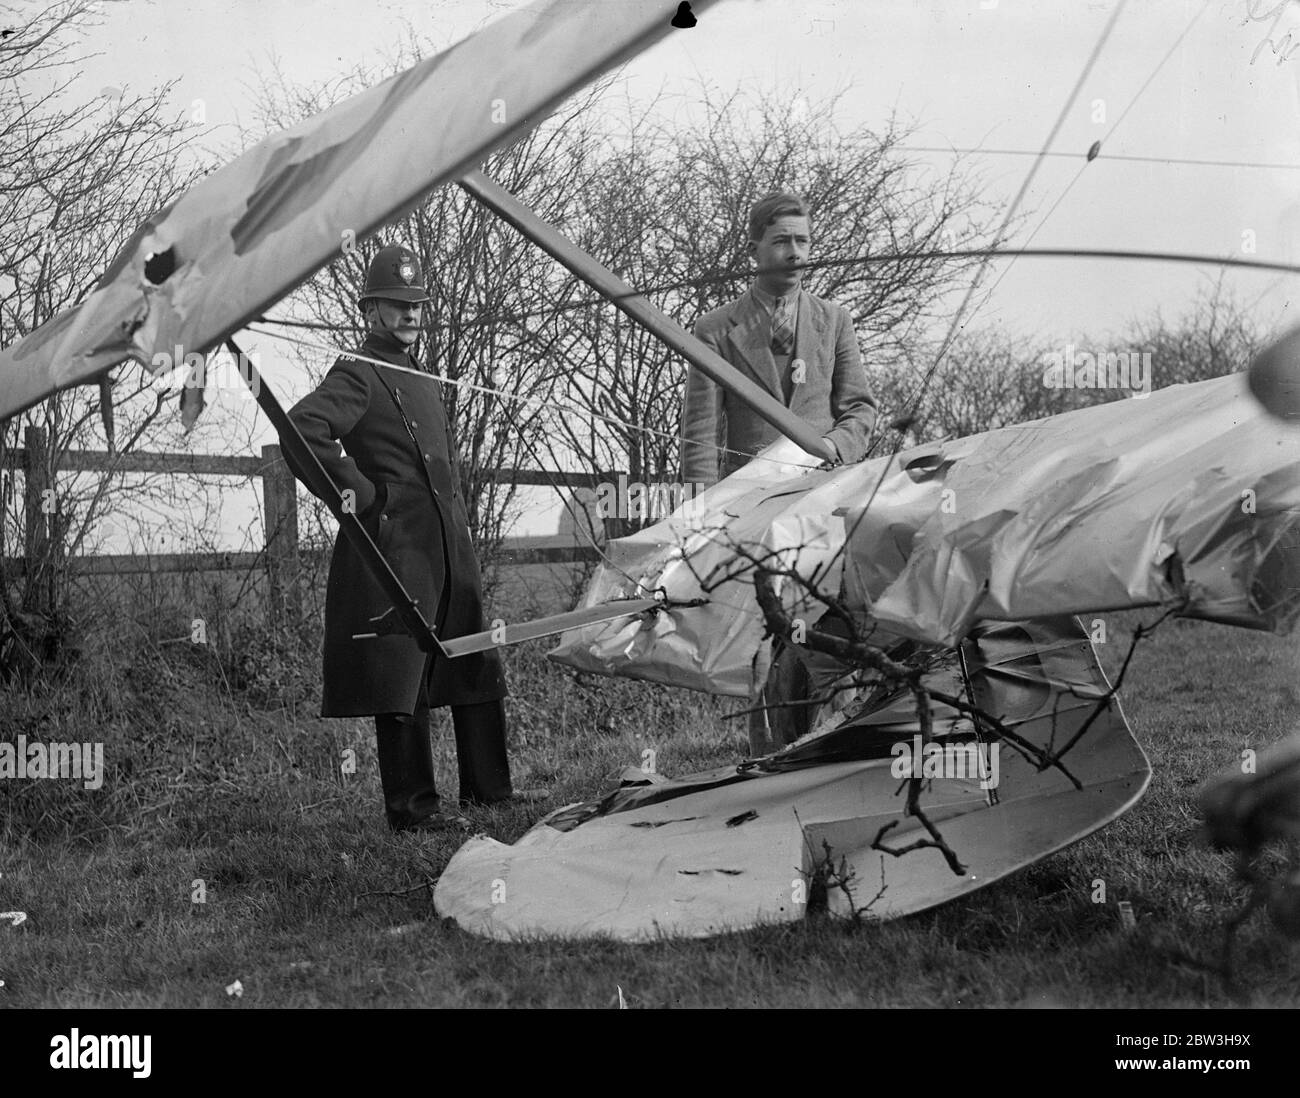 Aereo , pilotato da 22 anni Londoner colpisce l'albero e si schianta in campo in Essex . Il pilota, John Everett Ray , guarda nel pozzetto del suo aereo danneggiato . 19 marzo 1935 Foto Stock